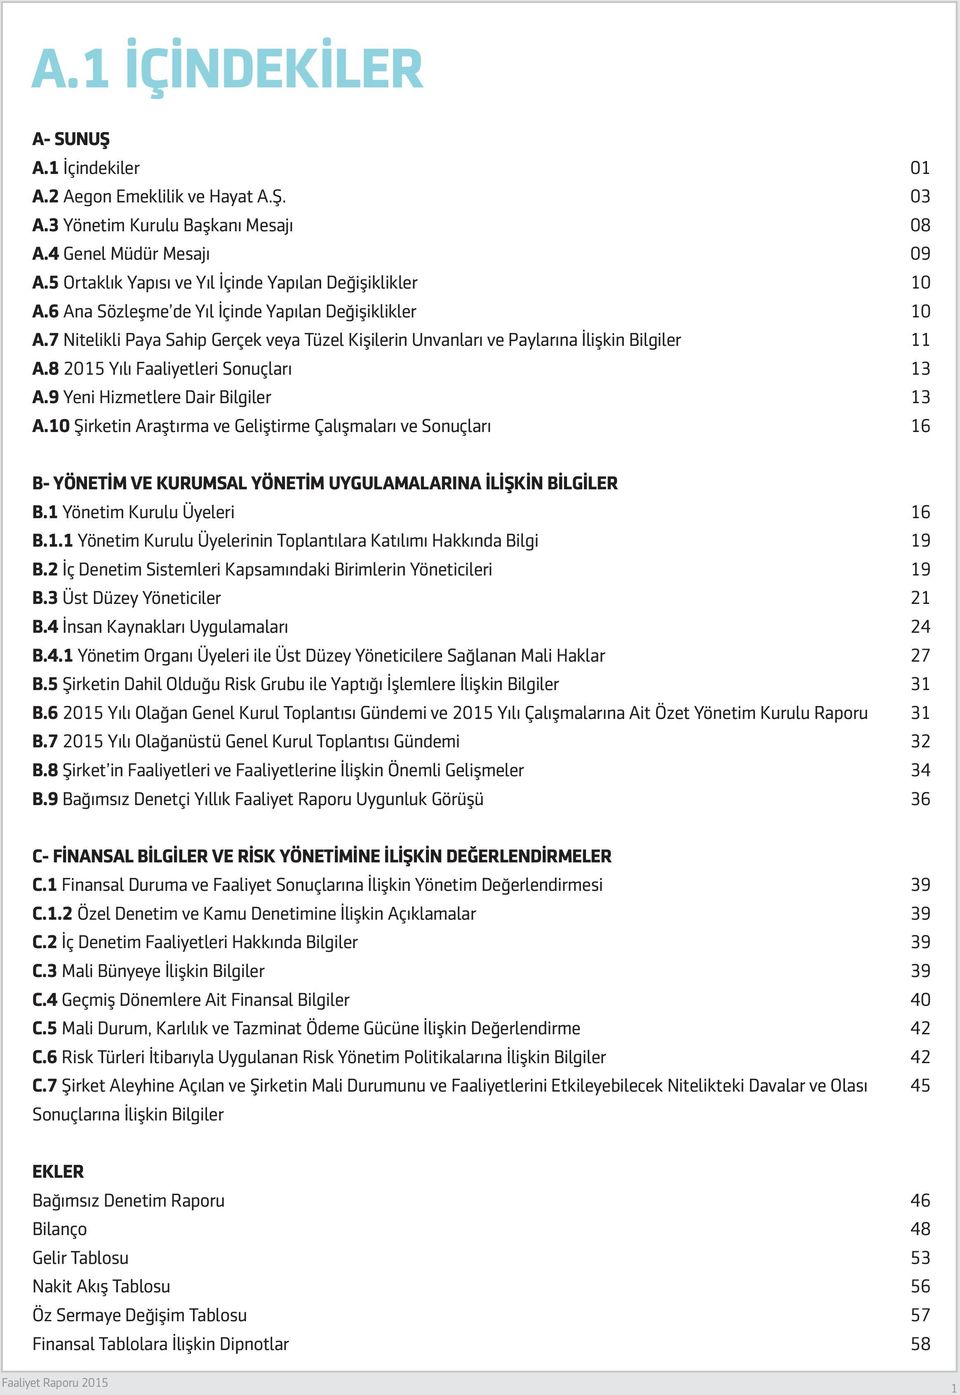 9 Yeni Hizmetlere Dair Bilgiler A.10 Şirketin Araştırma ve Geliştirme Çalışmaları ve Sonuçları 01 03 08 09 10 10 11 13 13 16 B- YÖNETİM VE KURUMSAL YÖNETİM UYGULAMALARINA İLİŞKİN BİLGİLER B.